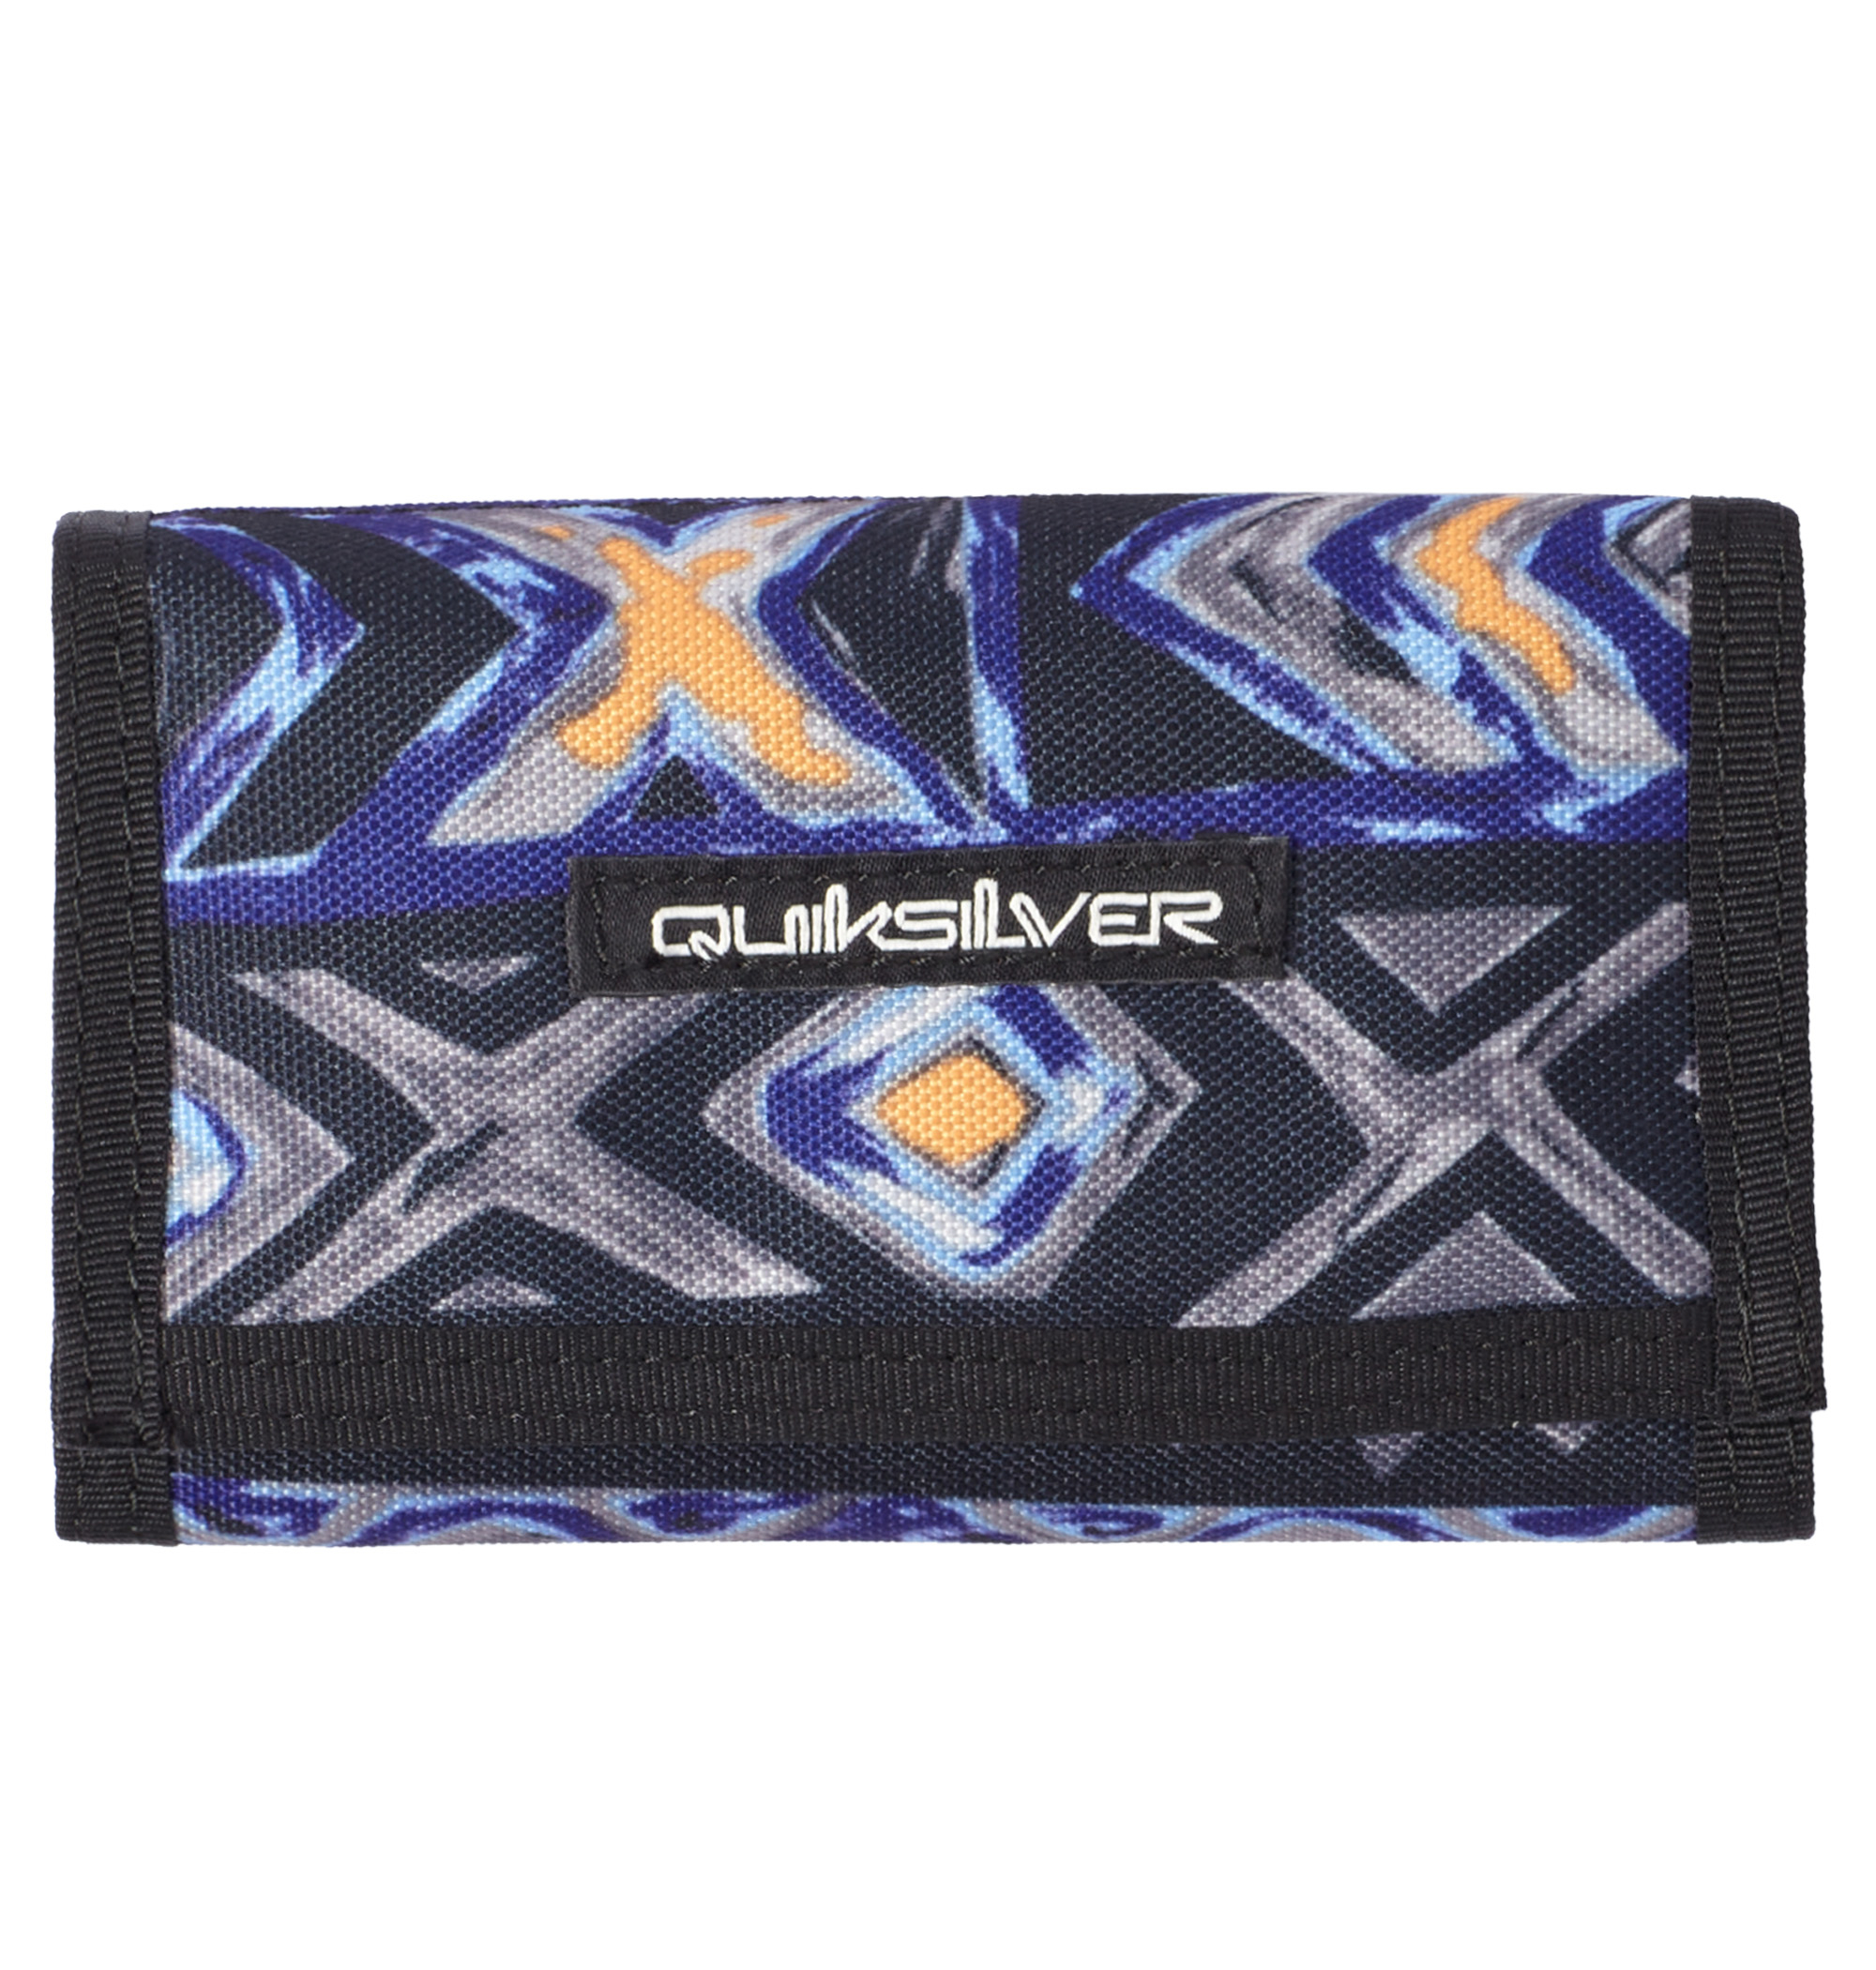 ＜Quiksilver＞ THE EVERYDAILY カラーによって異なるデザインとブランドロゴがアイキャッチになるお財布が入荷致しました画像